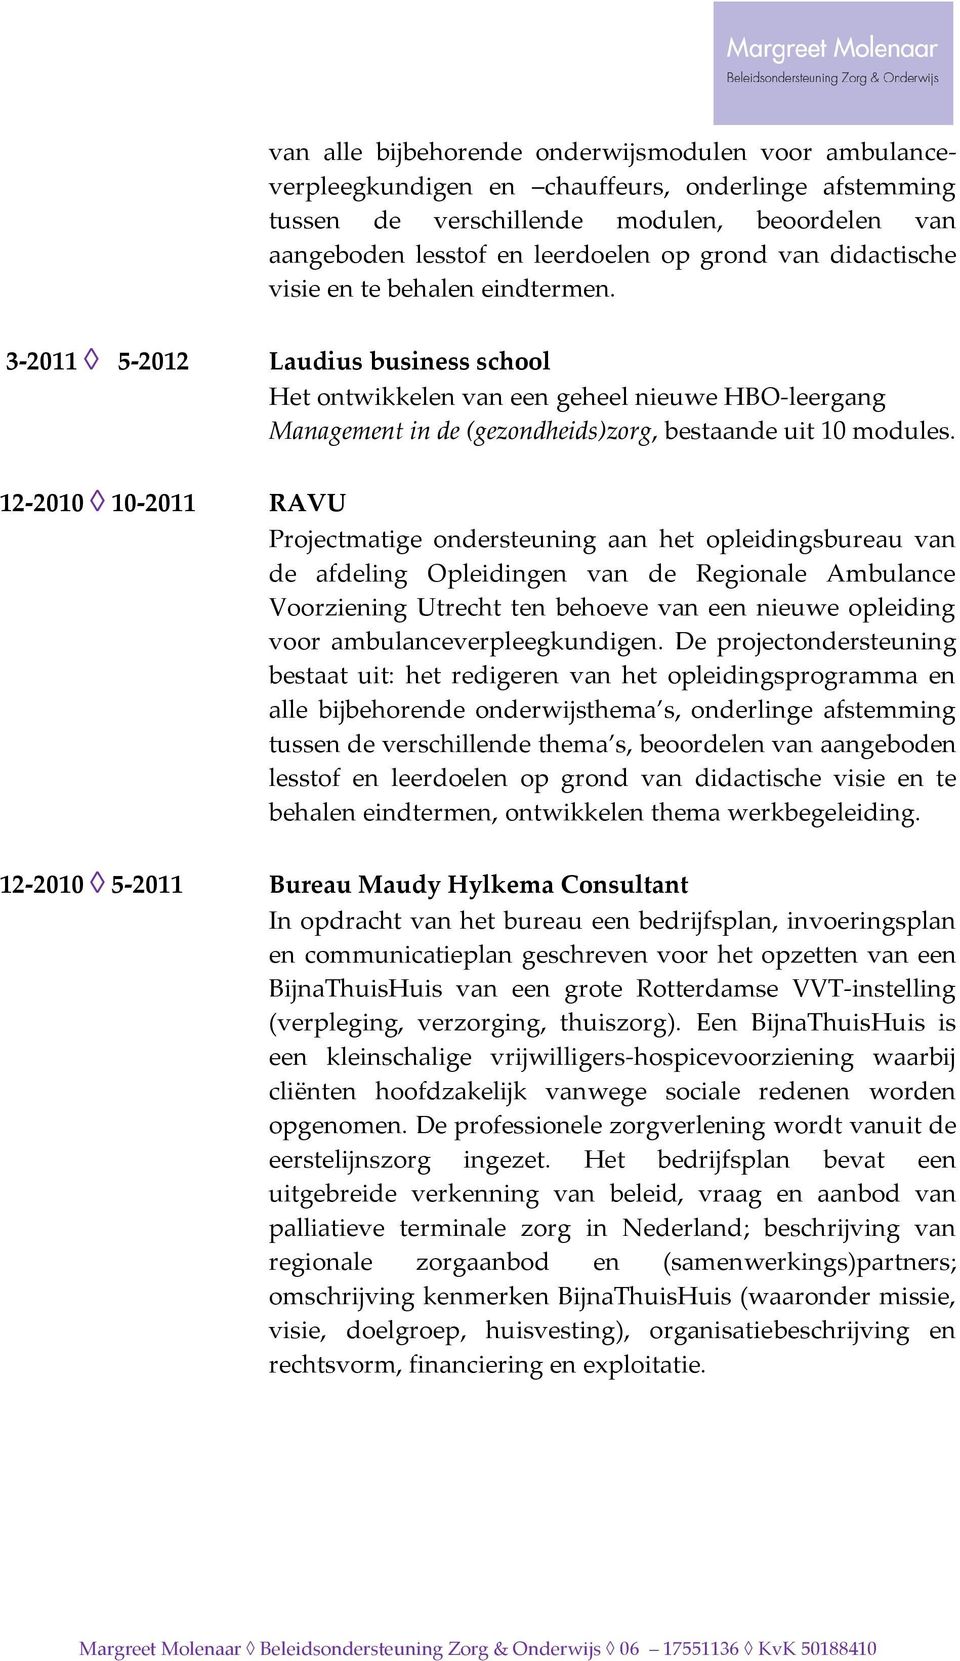 12-2010 10-2011 RAVU Projectmatige ondersteuning aan het opleidingsbureau van de afdeling Opleidingen van de Regionale Ambulance Voorziening Utrecht ten behoeve van een nieuwe opleiding voor